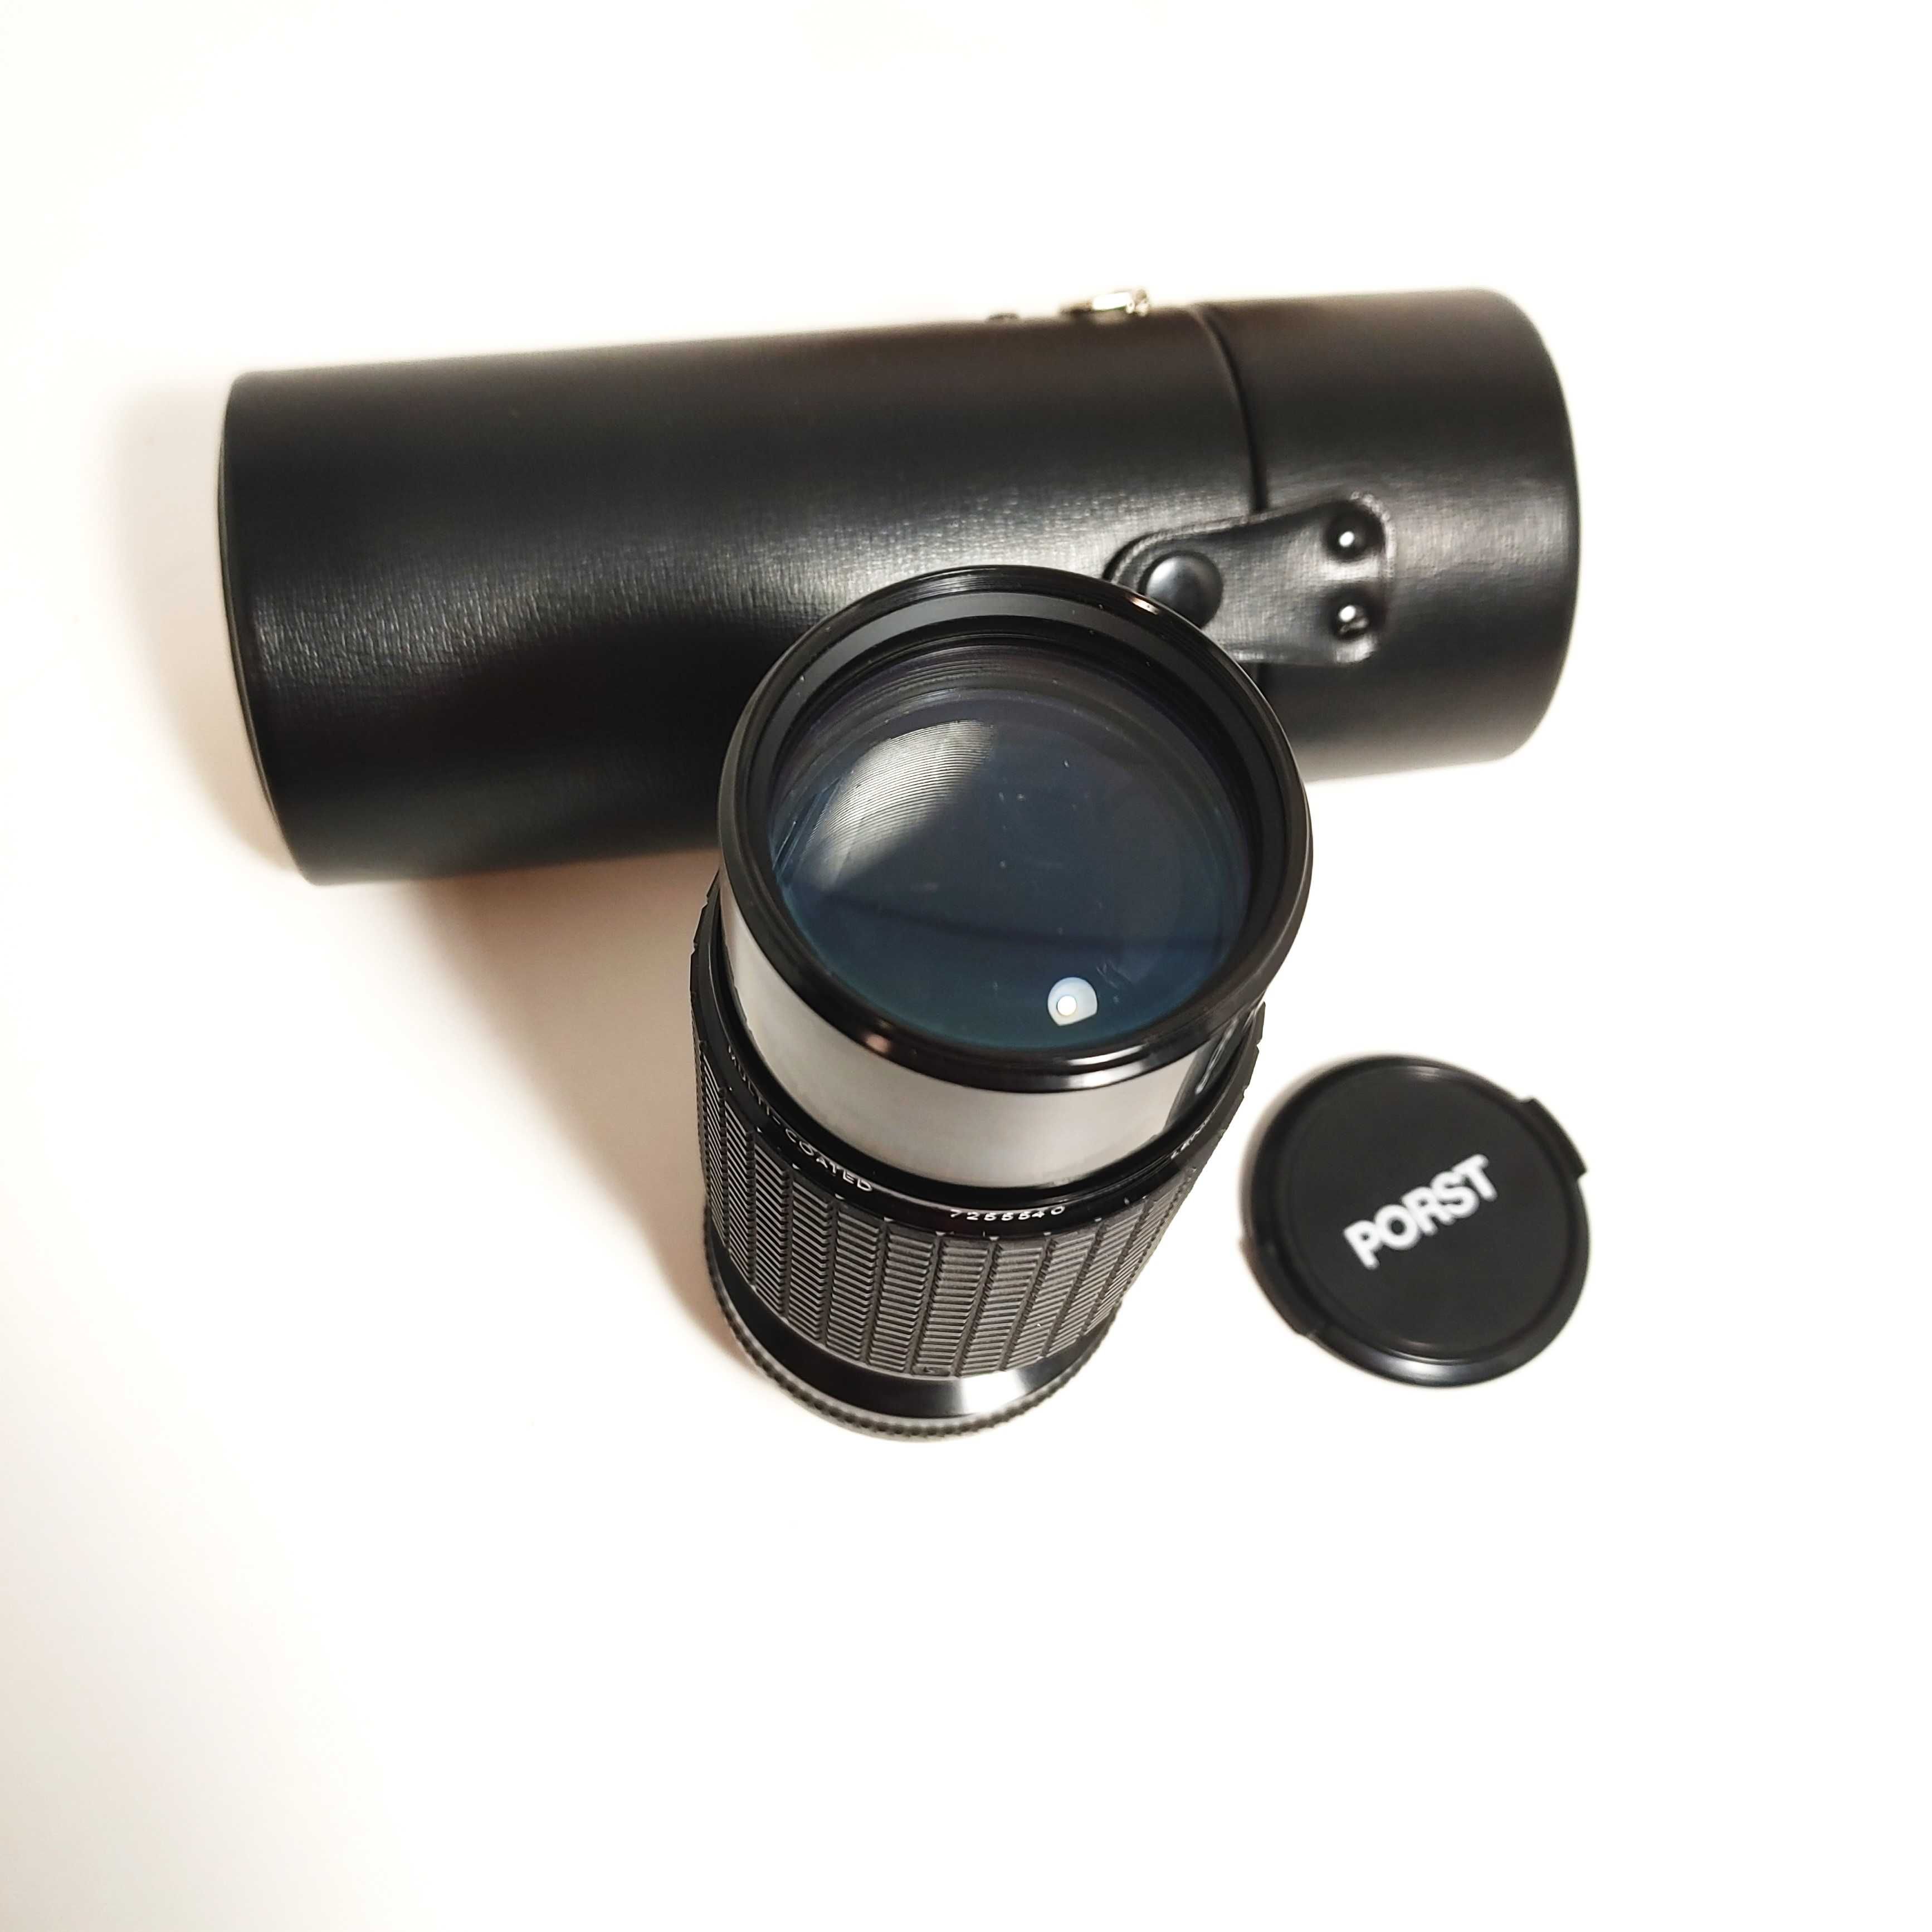 Ładny obiektyw Sigma Zoom KII 1:4,5 70-210mm MC mocowanie Pentax K